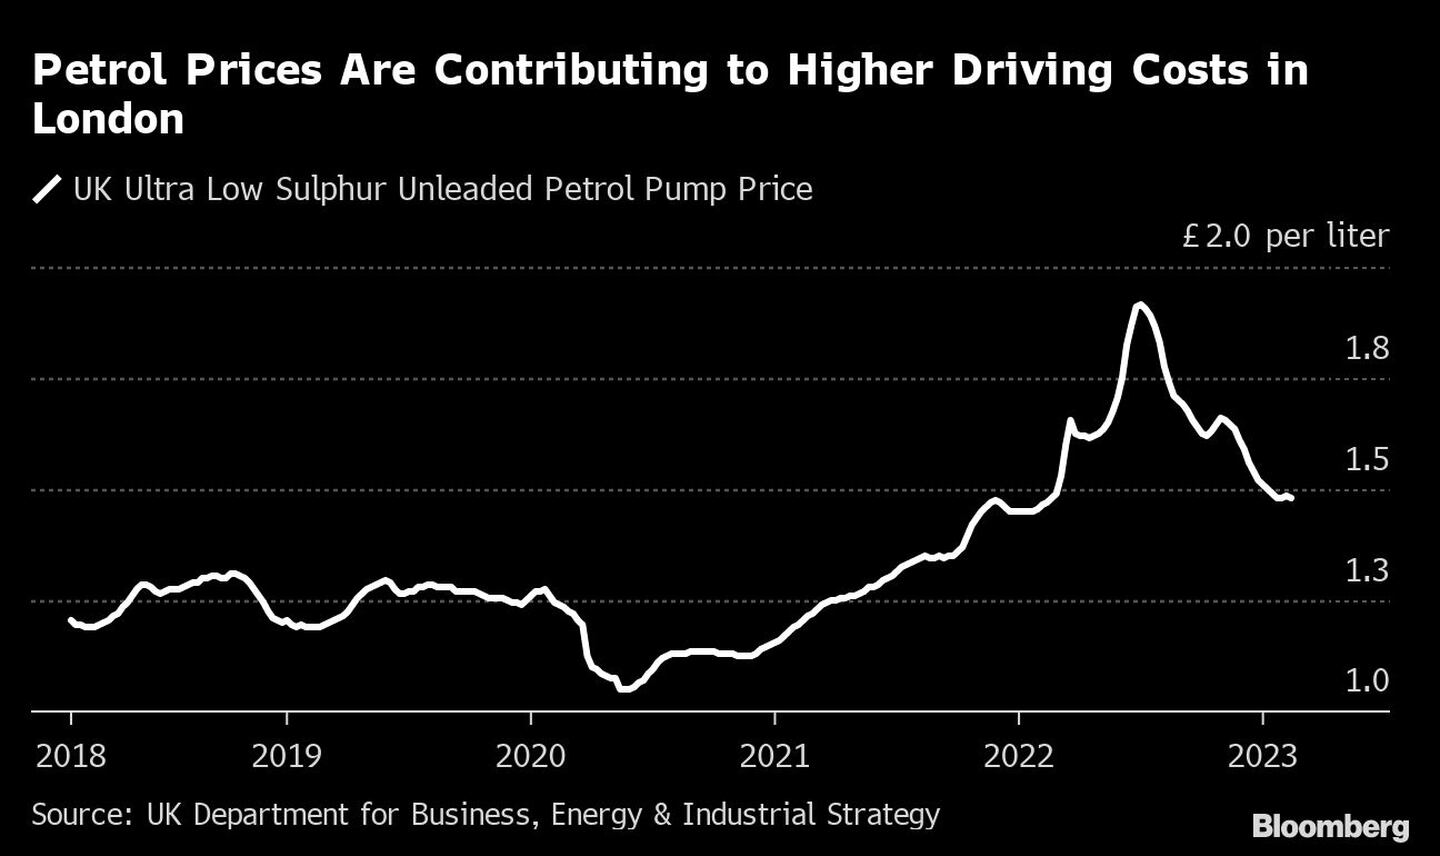 Los precios de la gasolina contribuyen al encarecimiento de los costes de conducción en Londresdfd